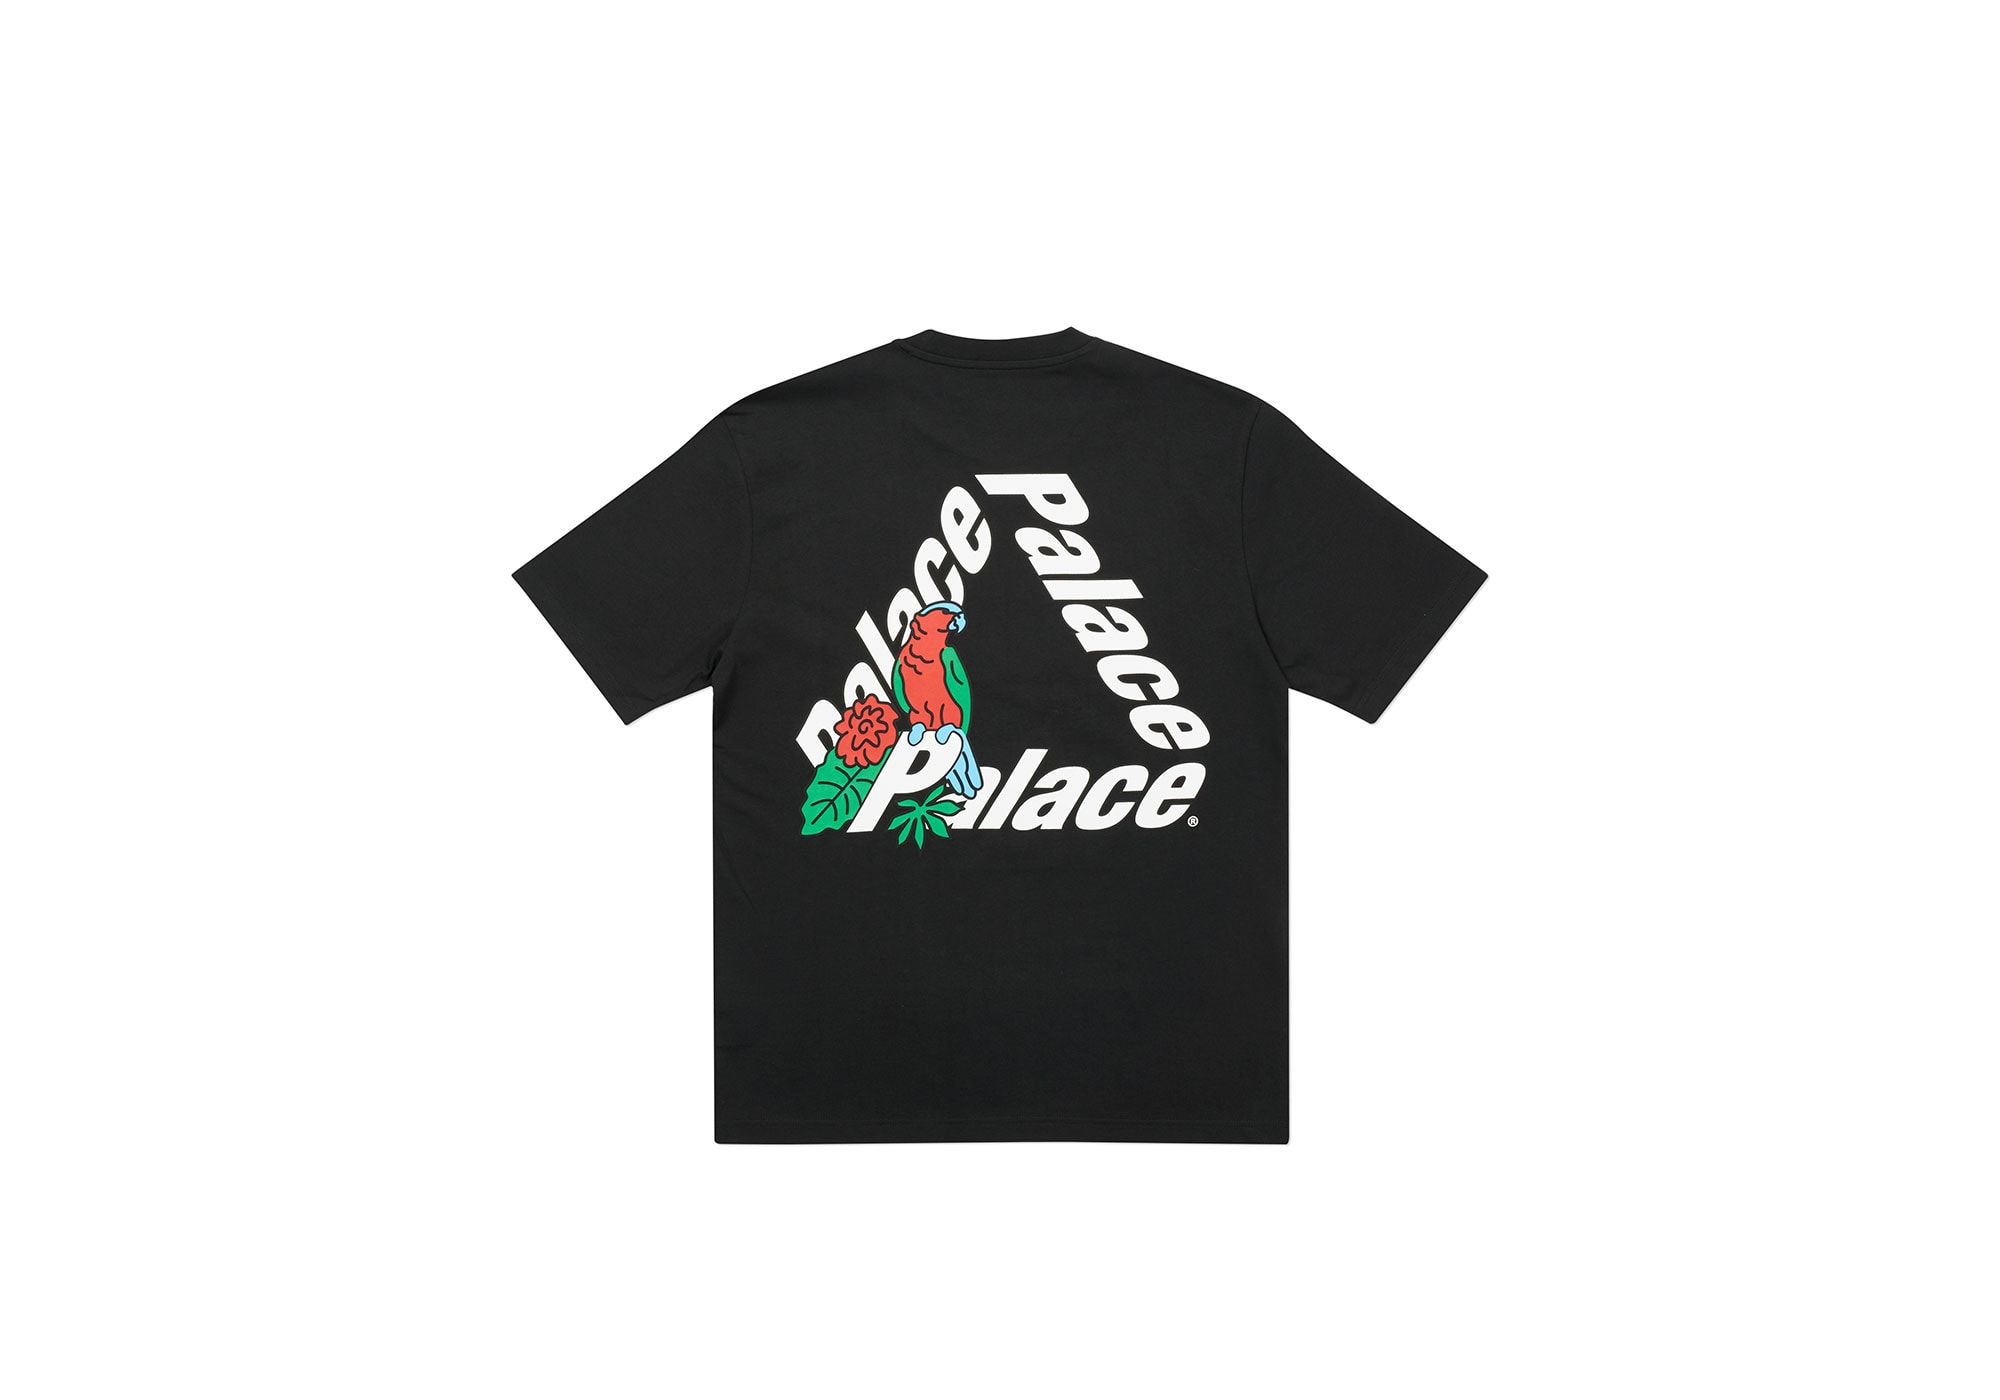 Palace Skateboards 2020 秋季系列恤衫單品一覽